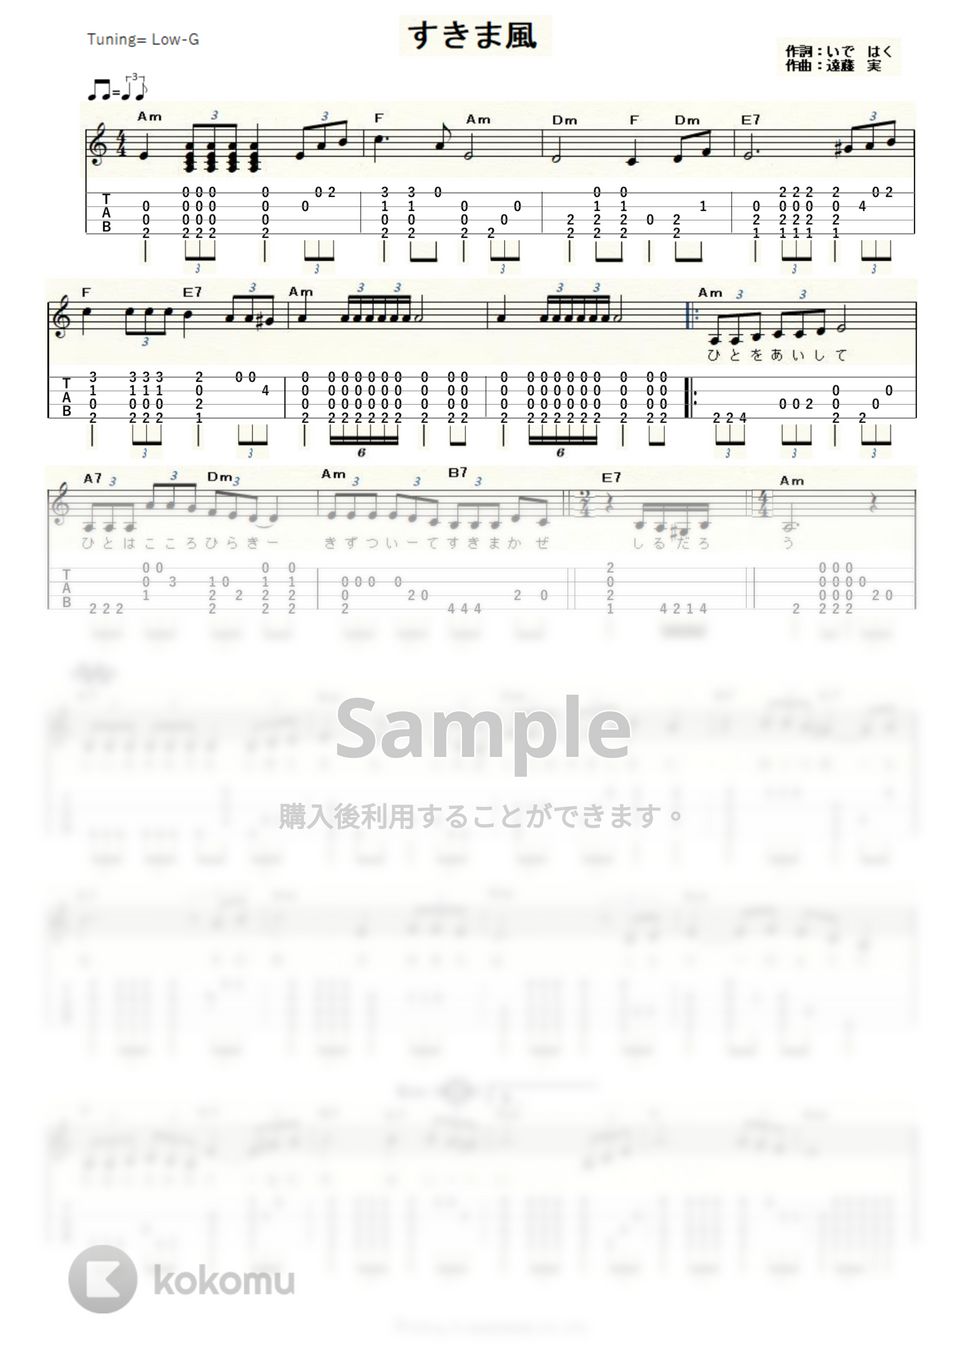 杉良太郎 すきま風 ｳｸﾚﾚｿﾛ Low G 中級 タブ 五線譜 By Ukulelepapa 0935